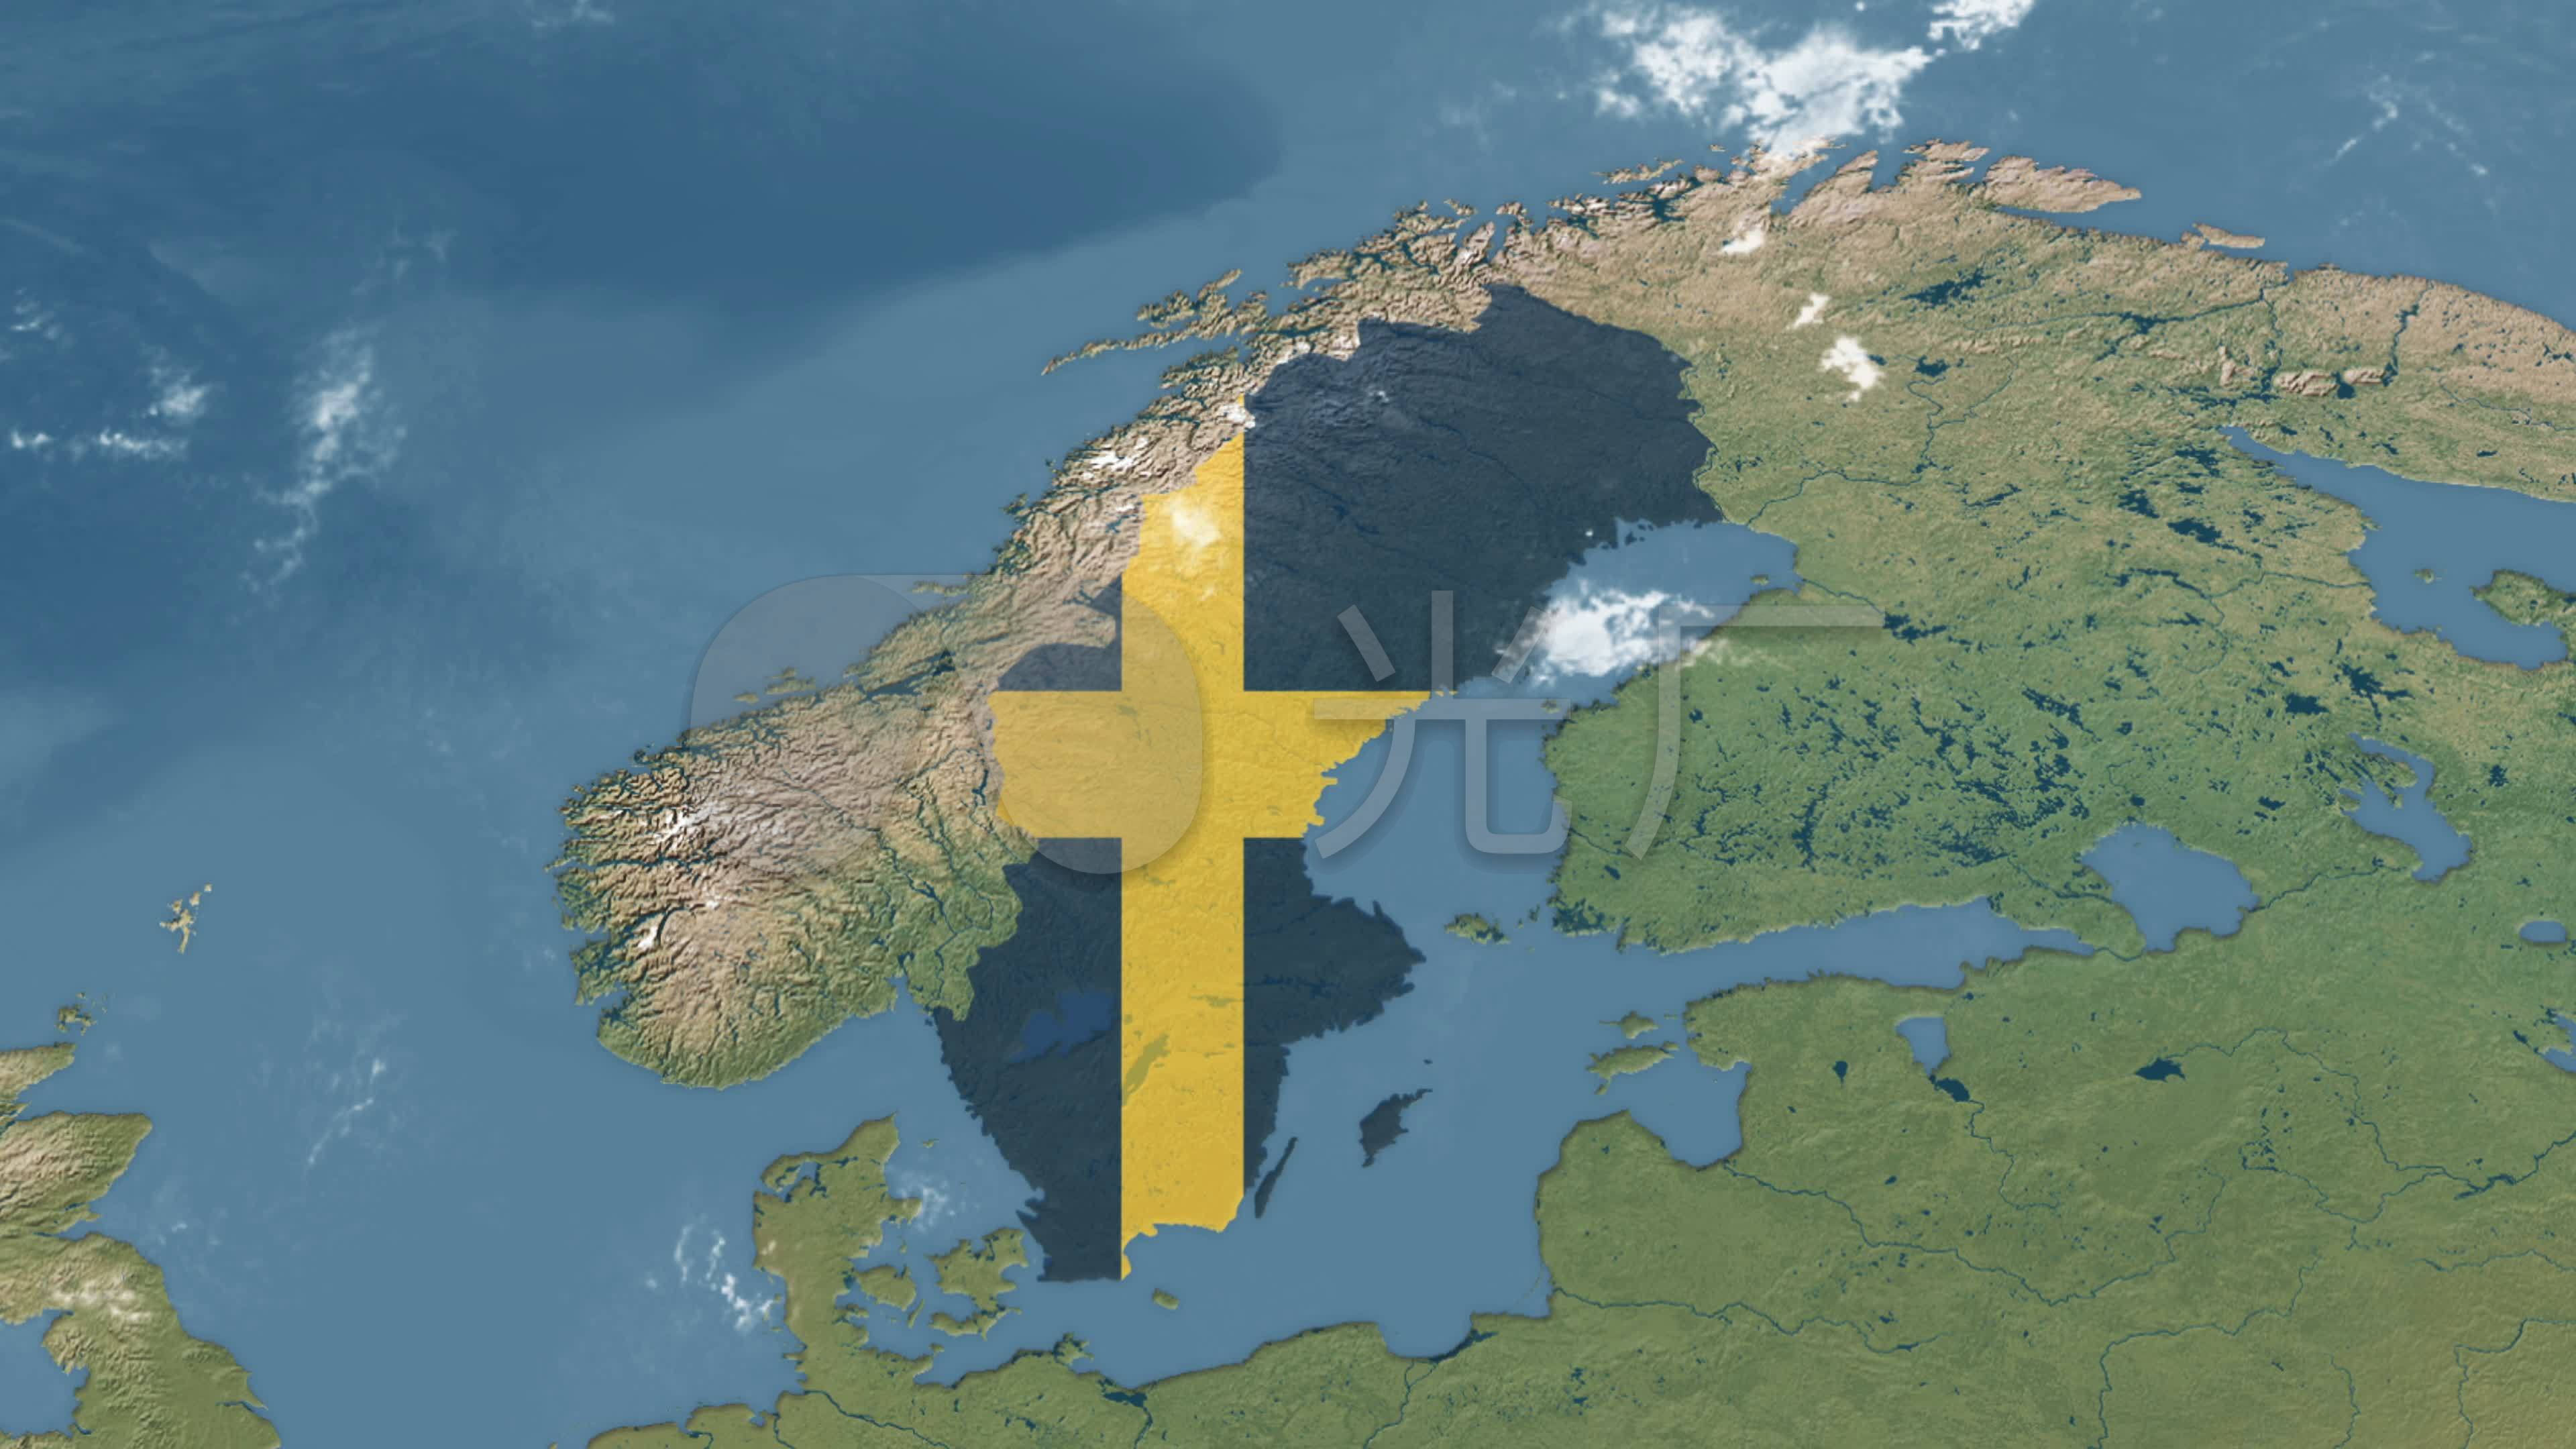 瑞典国家侧面影像和旗帜矢量图 向量例证. 插画 包括有 分级显示, 设计, 欧洲, 向量, 例证, 图象 - 168084101